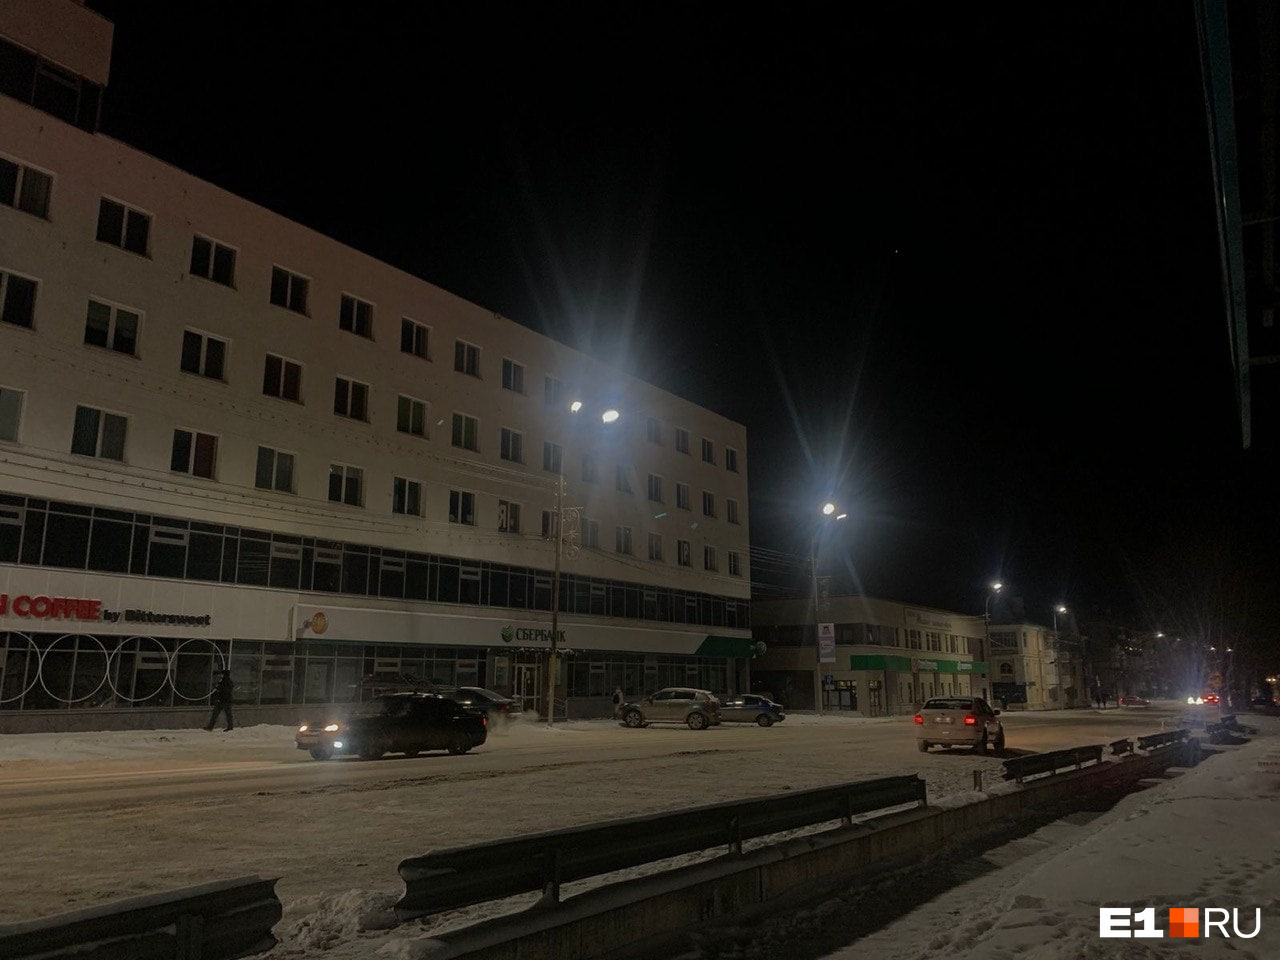 «Половина улиц без света!» В городе на Урале пропало электричество